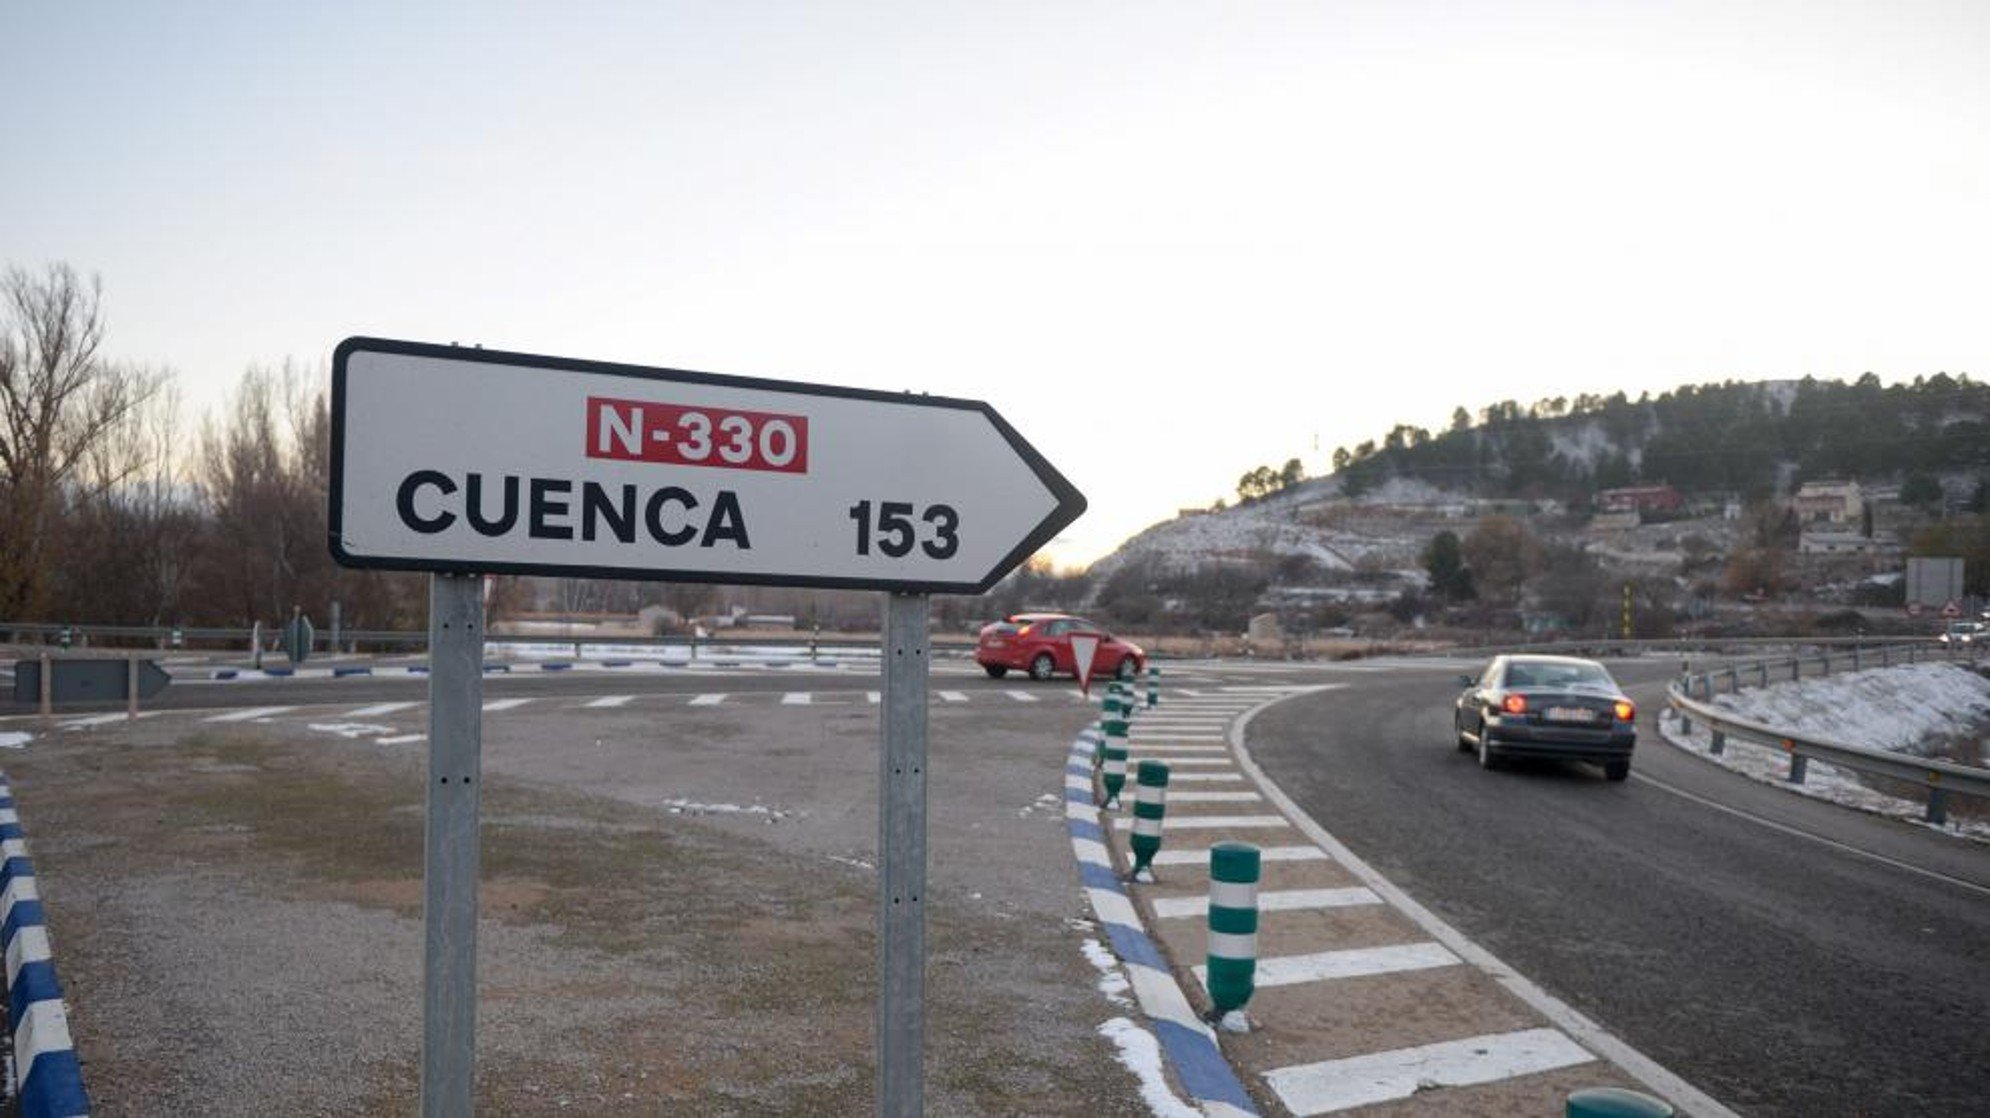 Portadas: La última fabricación catalanófoba de El Mundo, contra Cuenca